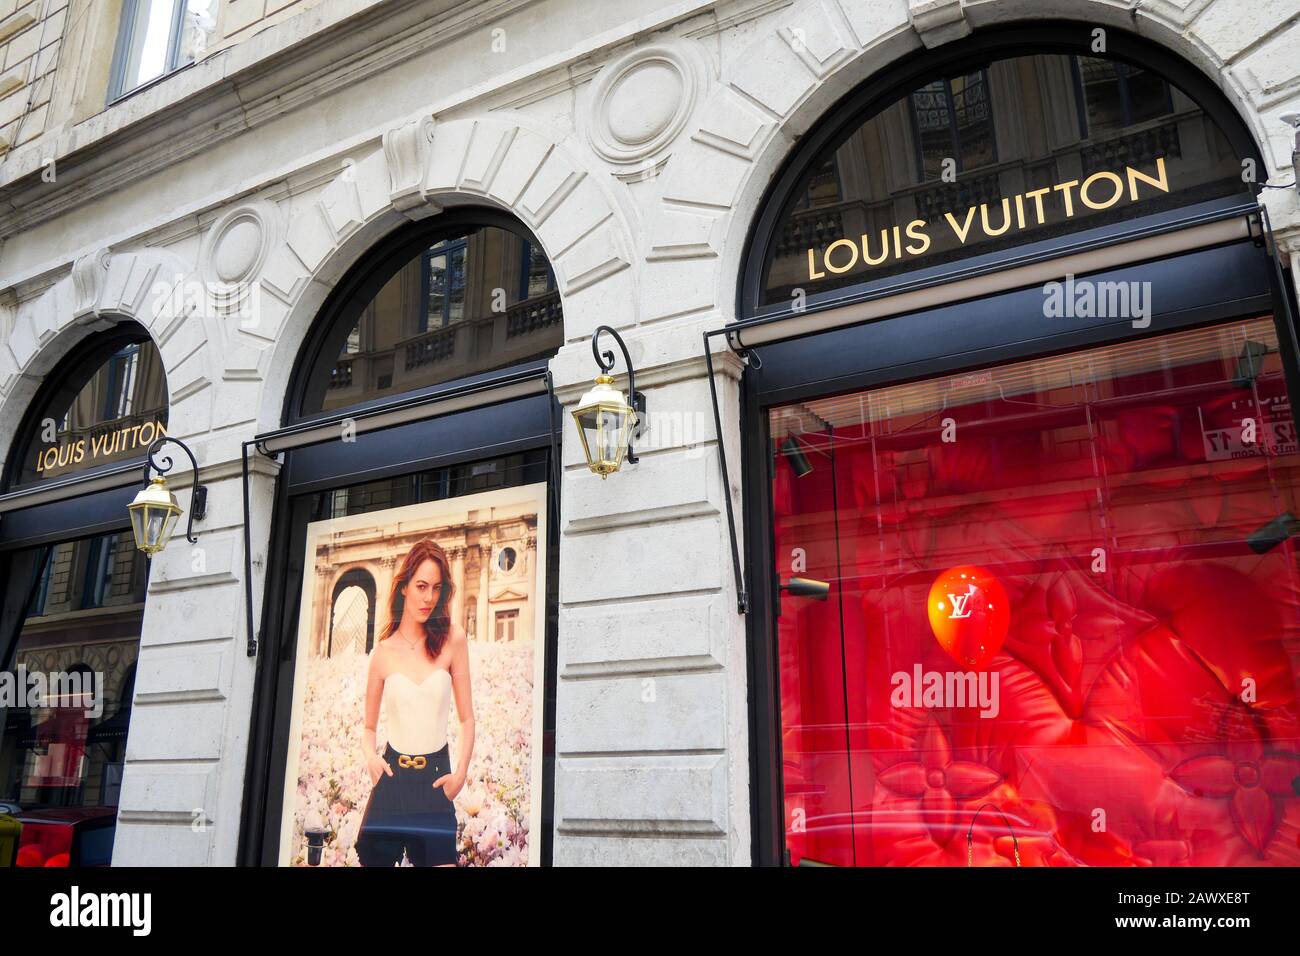 Louis Vuitton shop, Lyon, France Stock Photo - Alamy